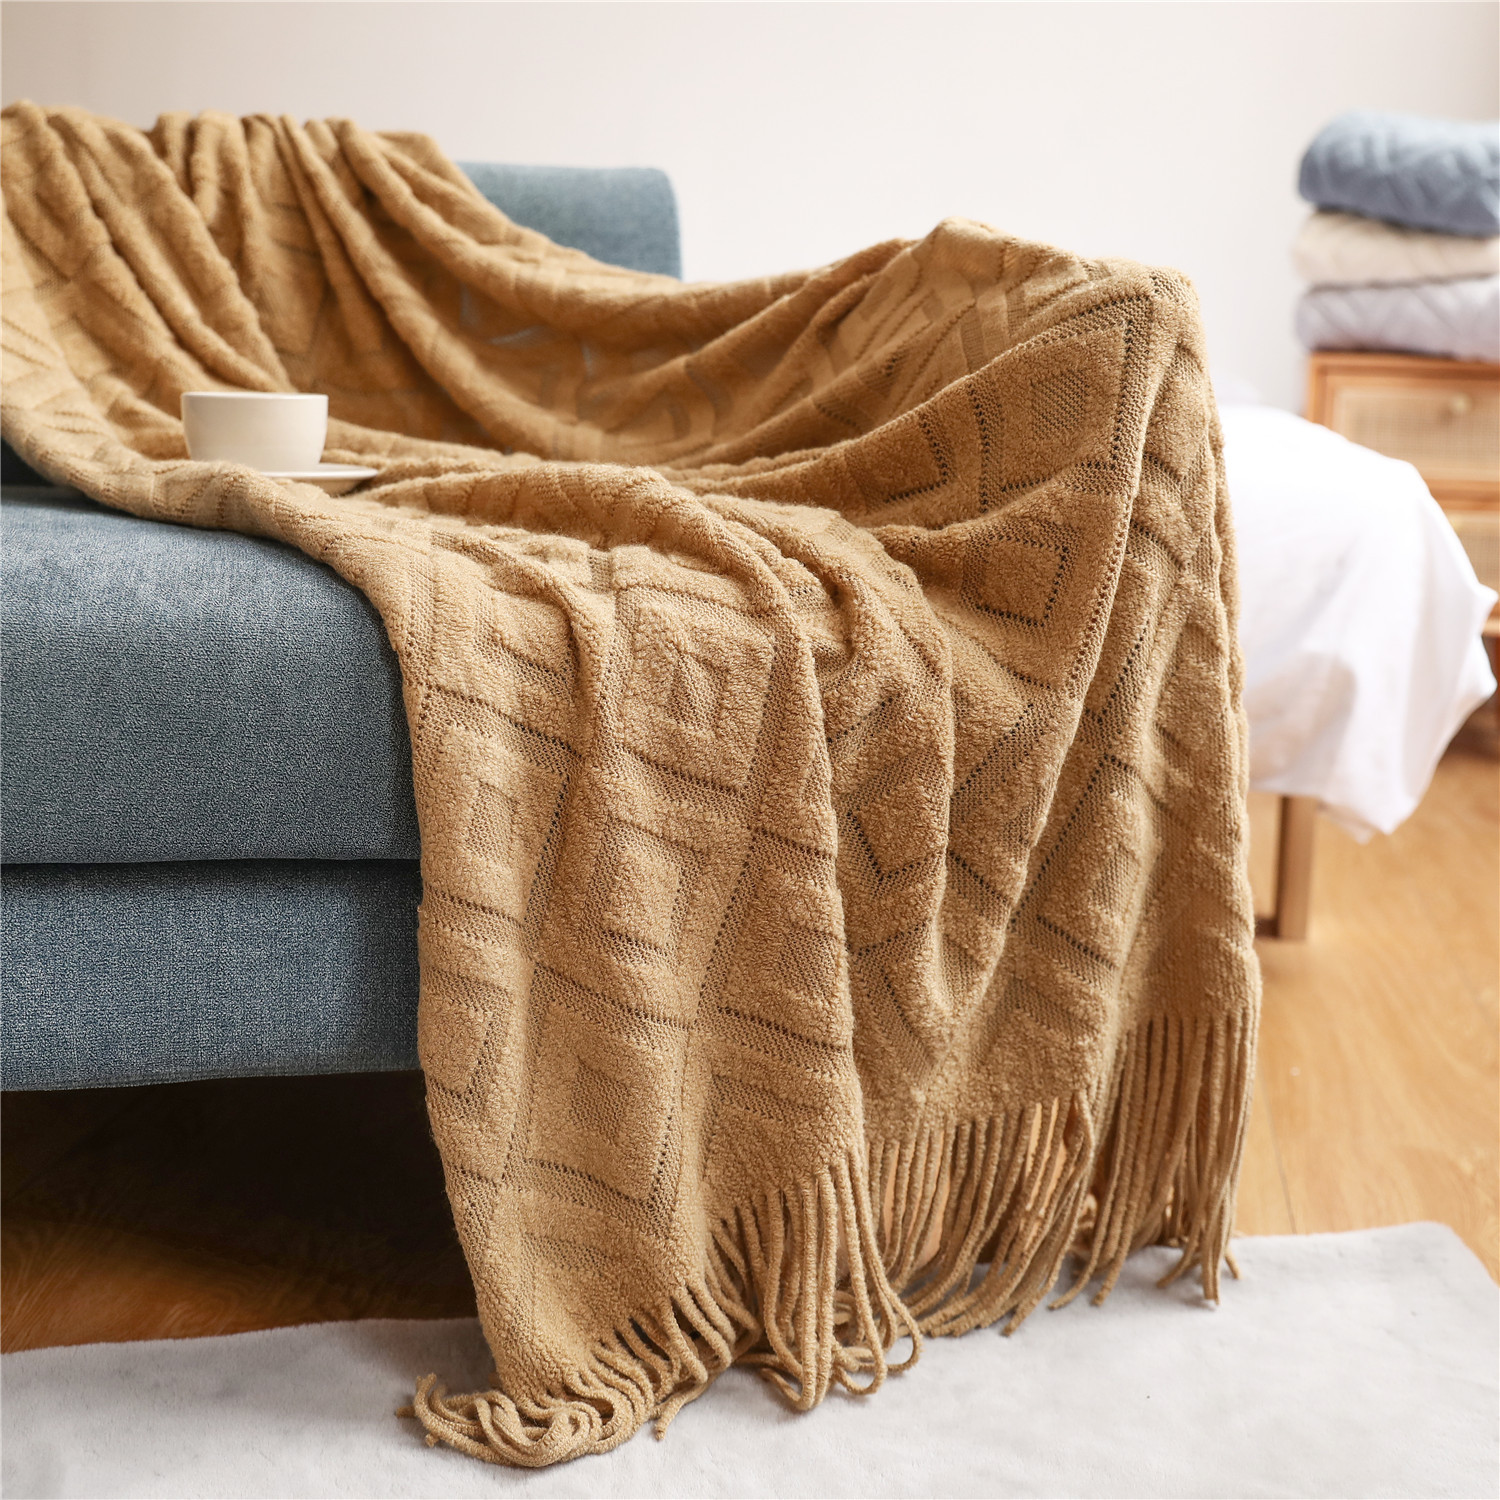 沙发毯盖毯毛毯 针织毯办公室午睡毯提花小毯子美式搭毯线毯产品图